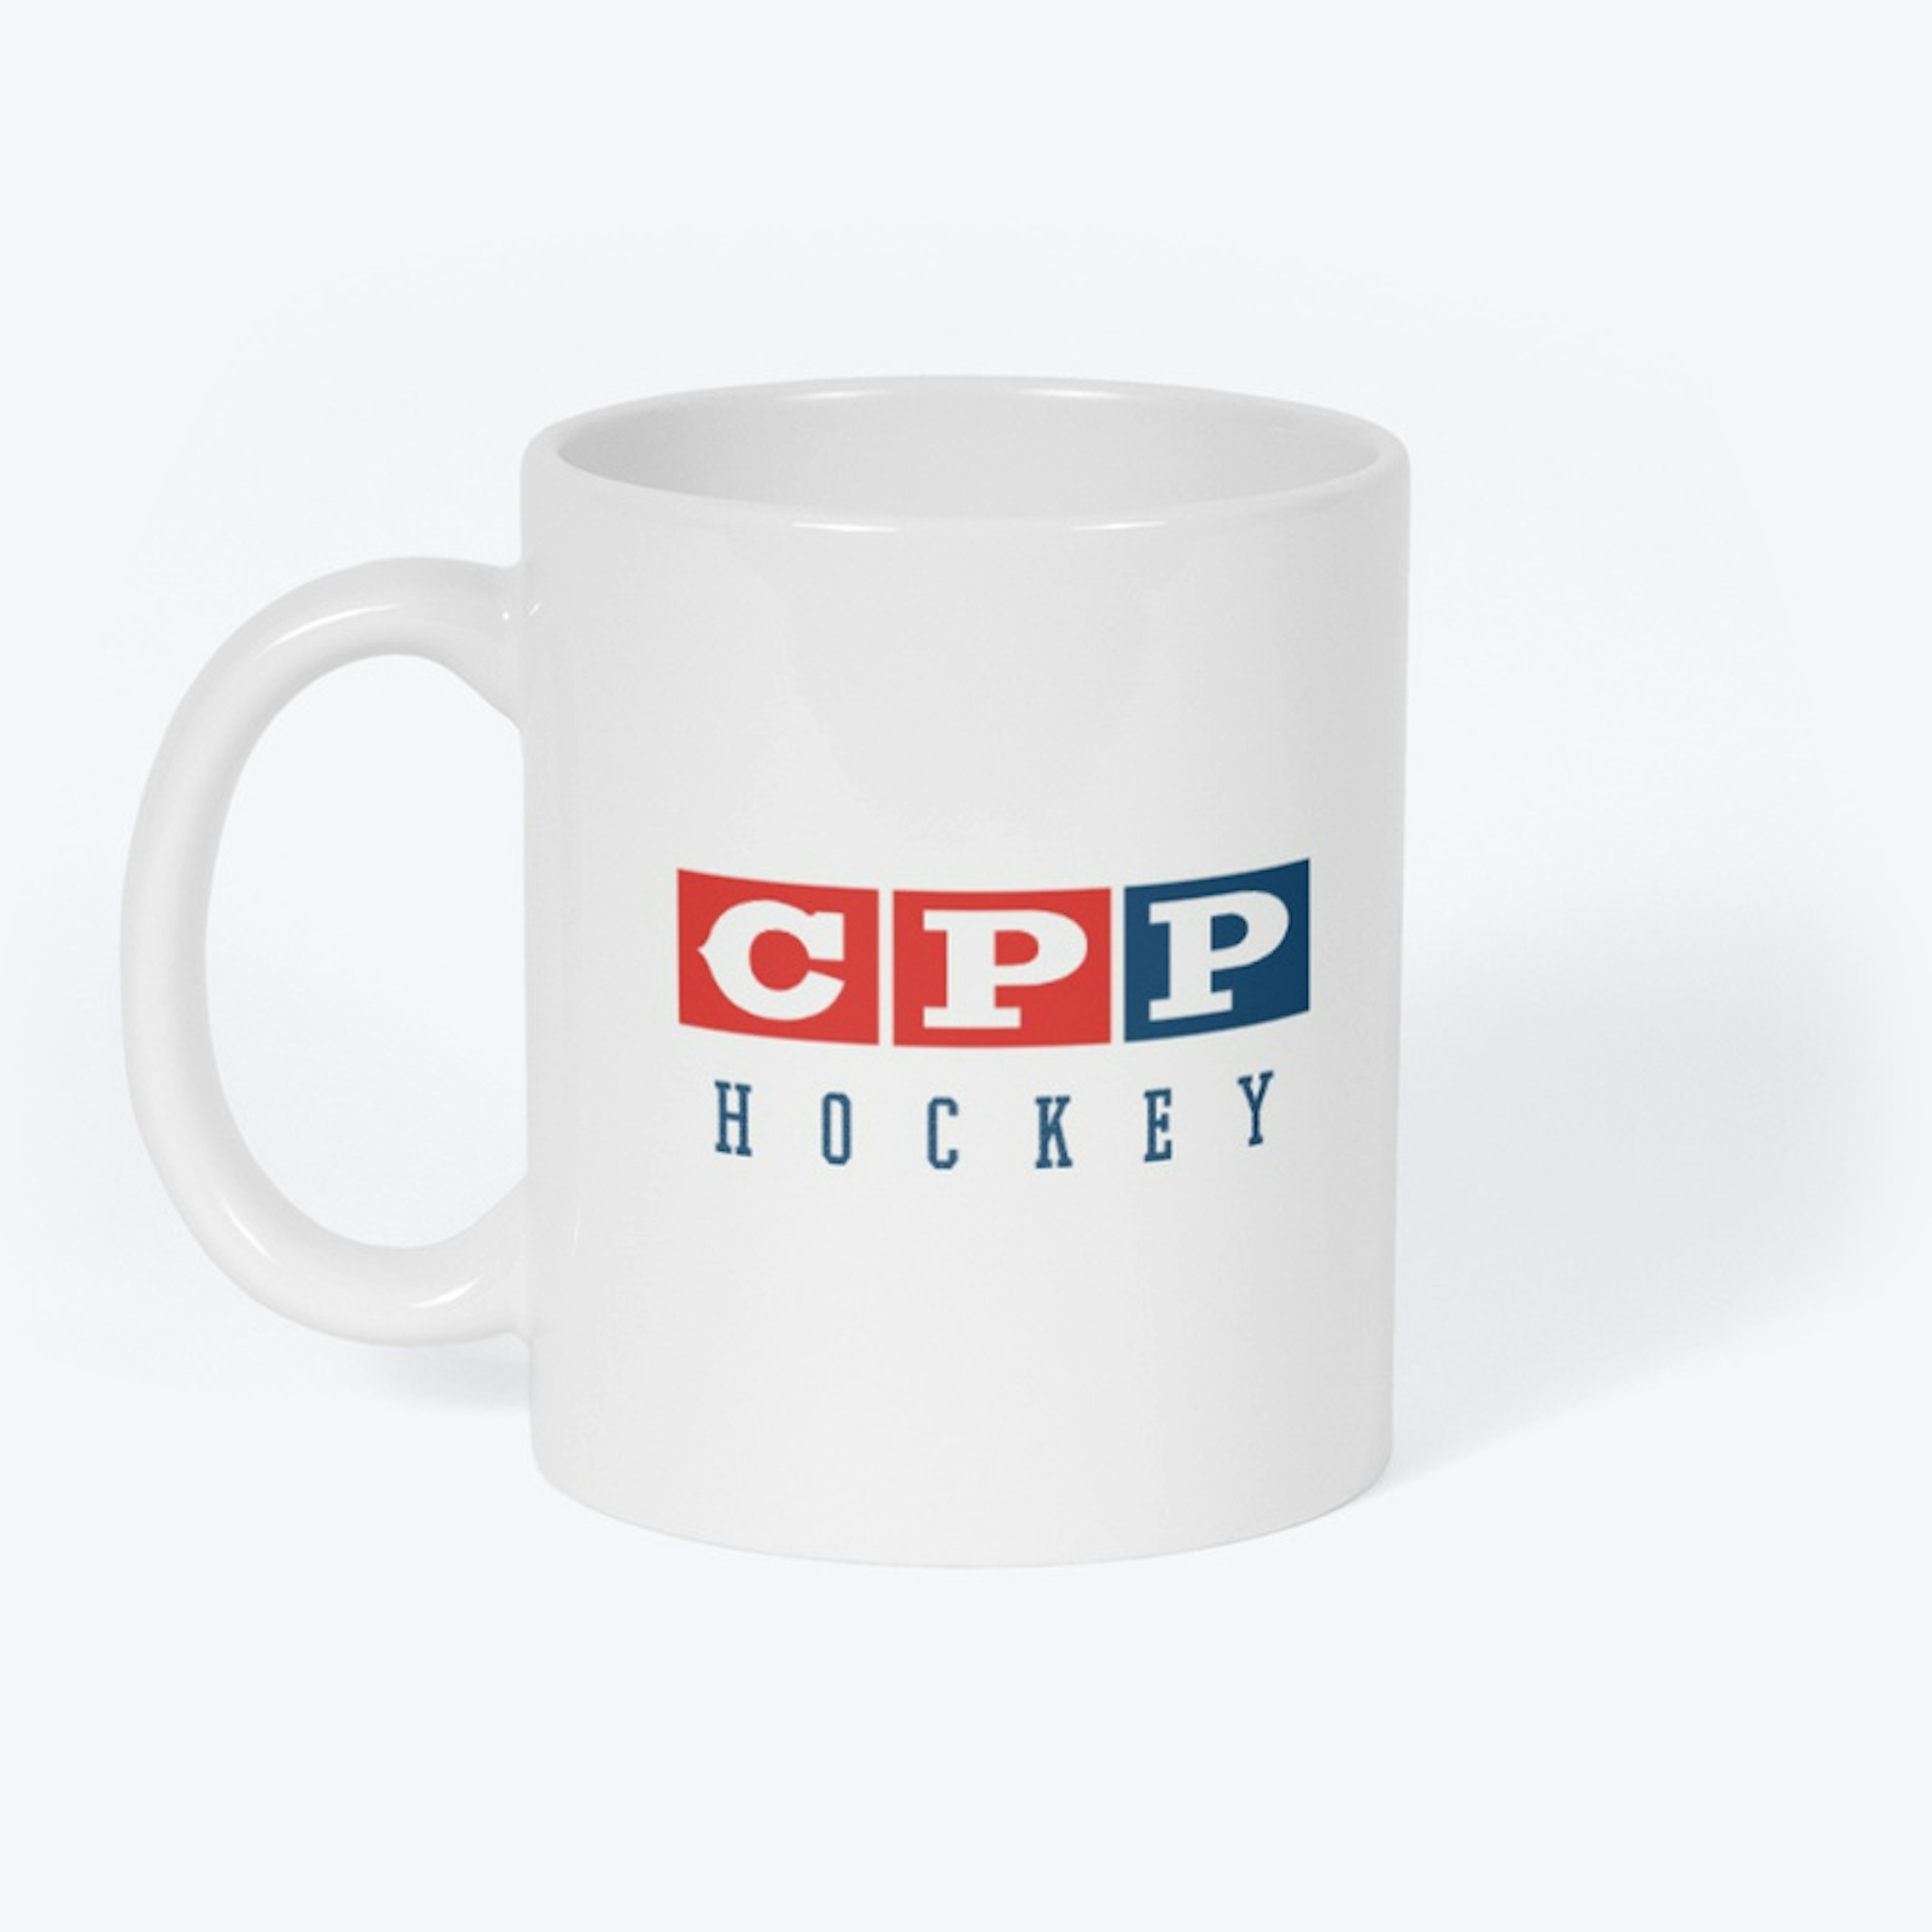 CPP Hockey